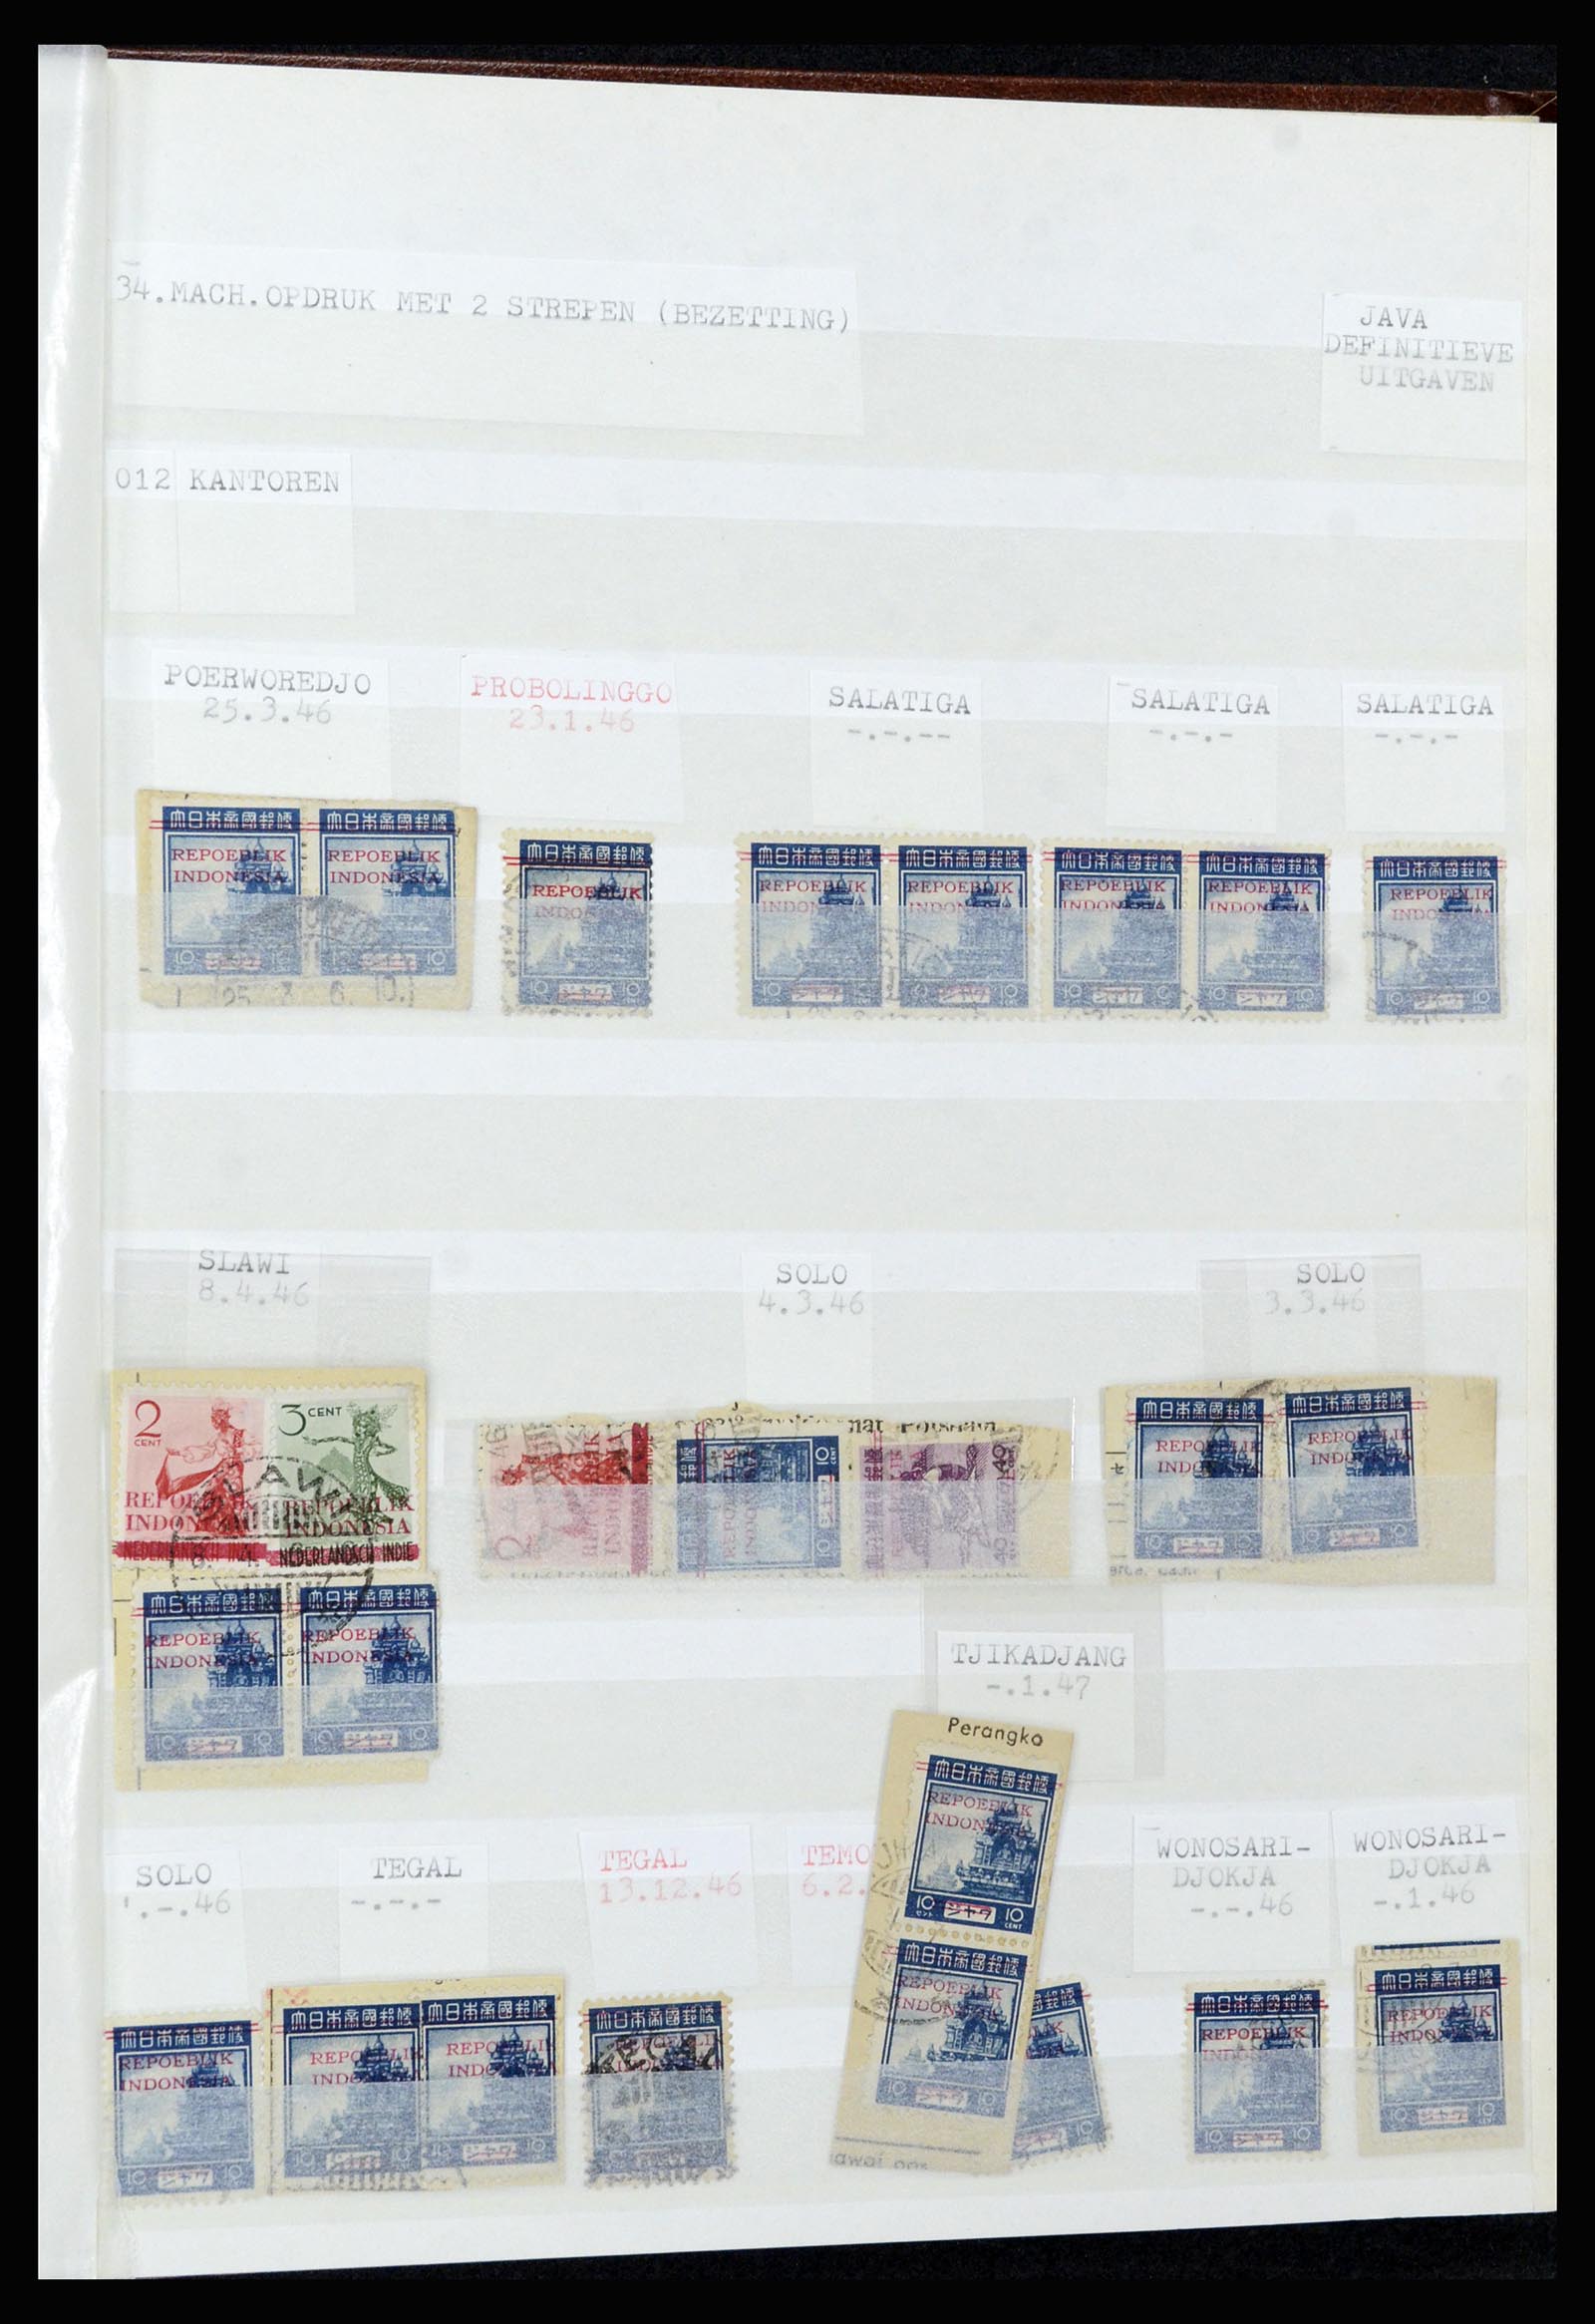 36742 325 - Stamp collection 36742 Dutch Indies interim period 1945-1949.